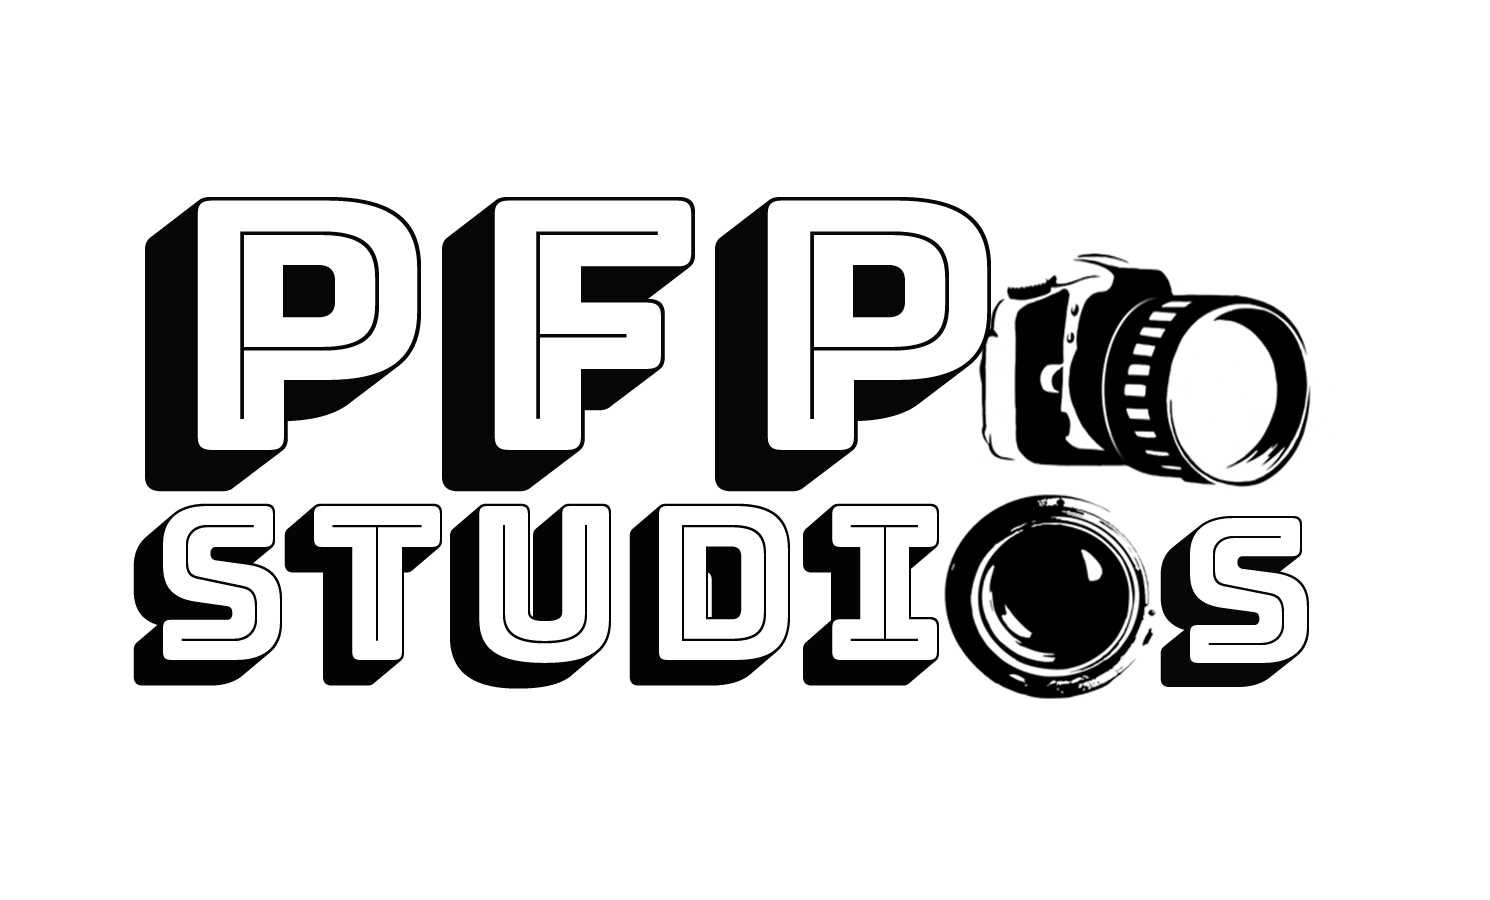 PFP STUDIOS LLC